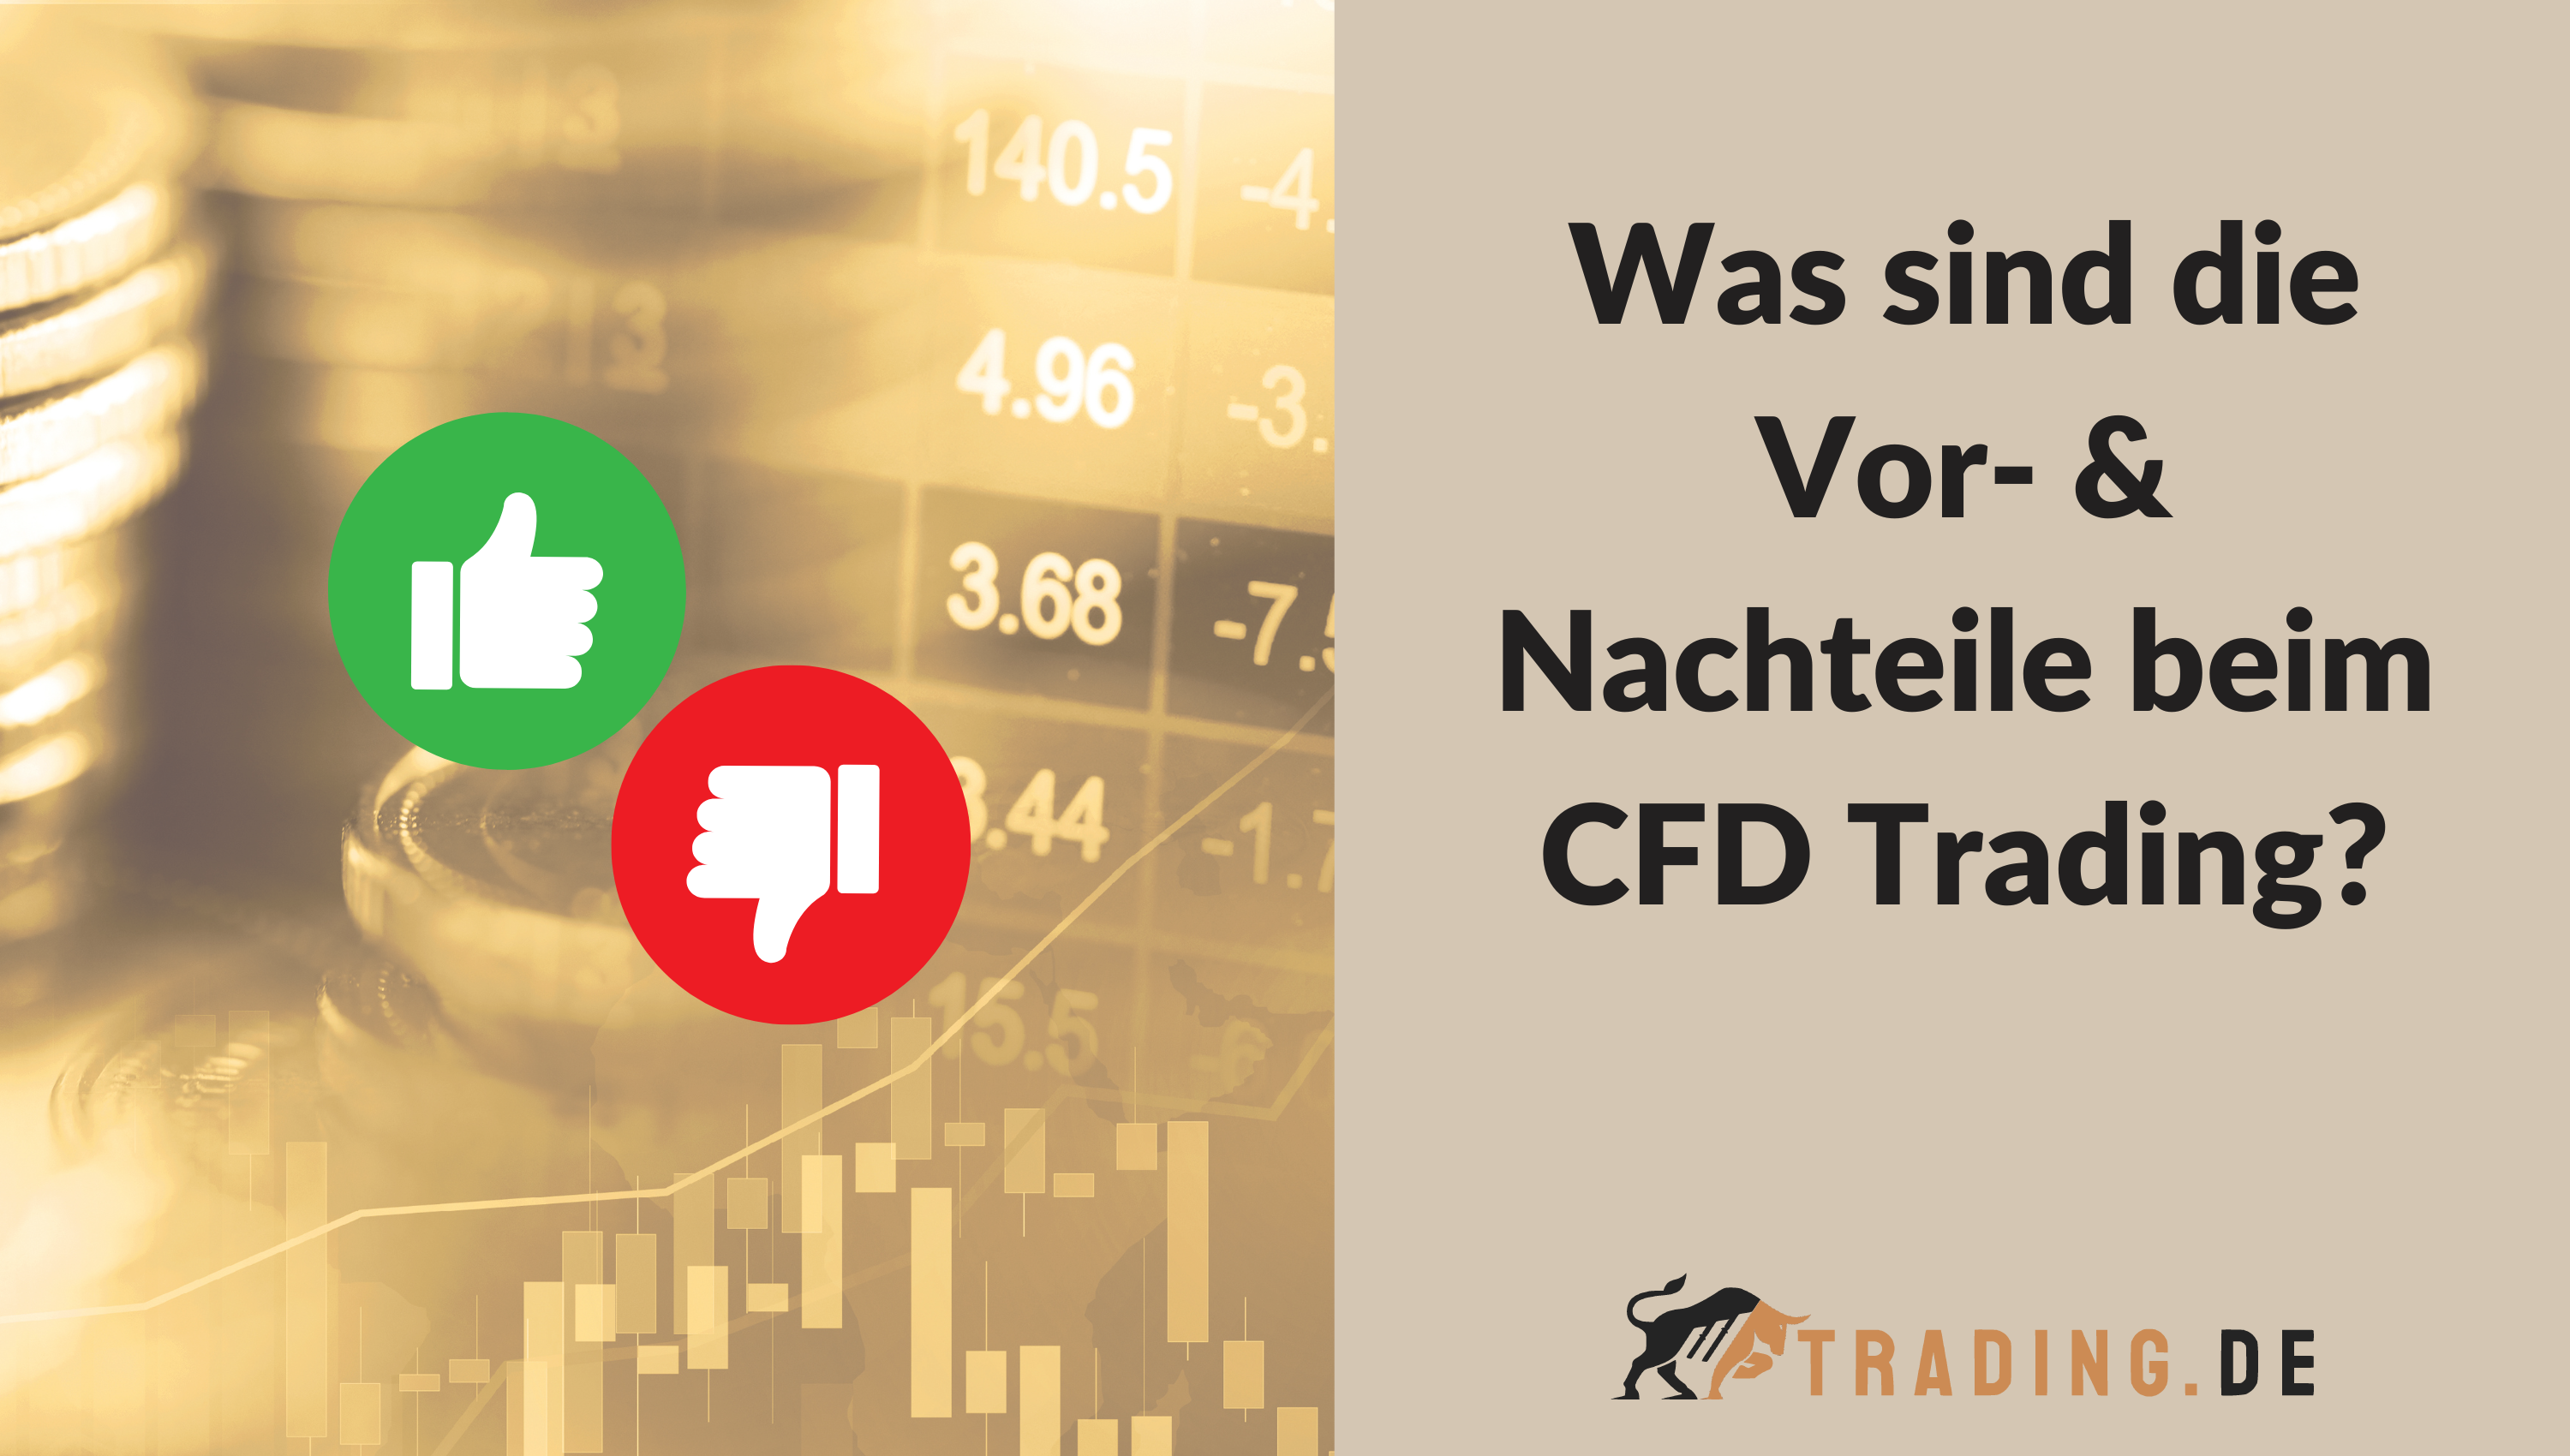 Was sind die Vor- & Nachteile beim CFD Trading?